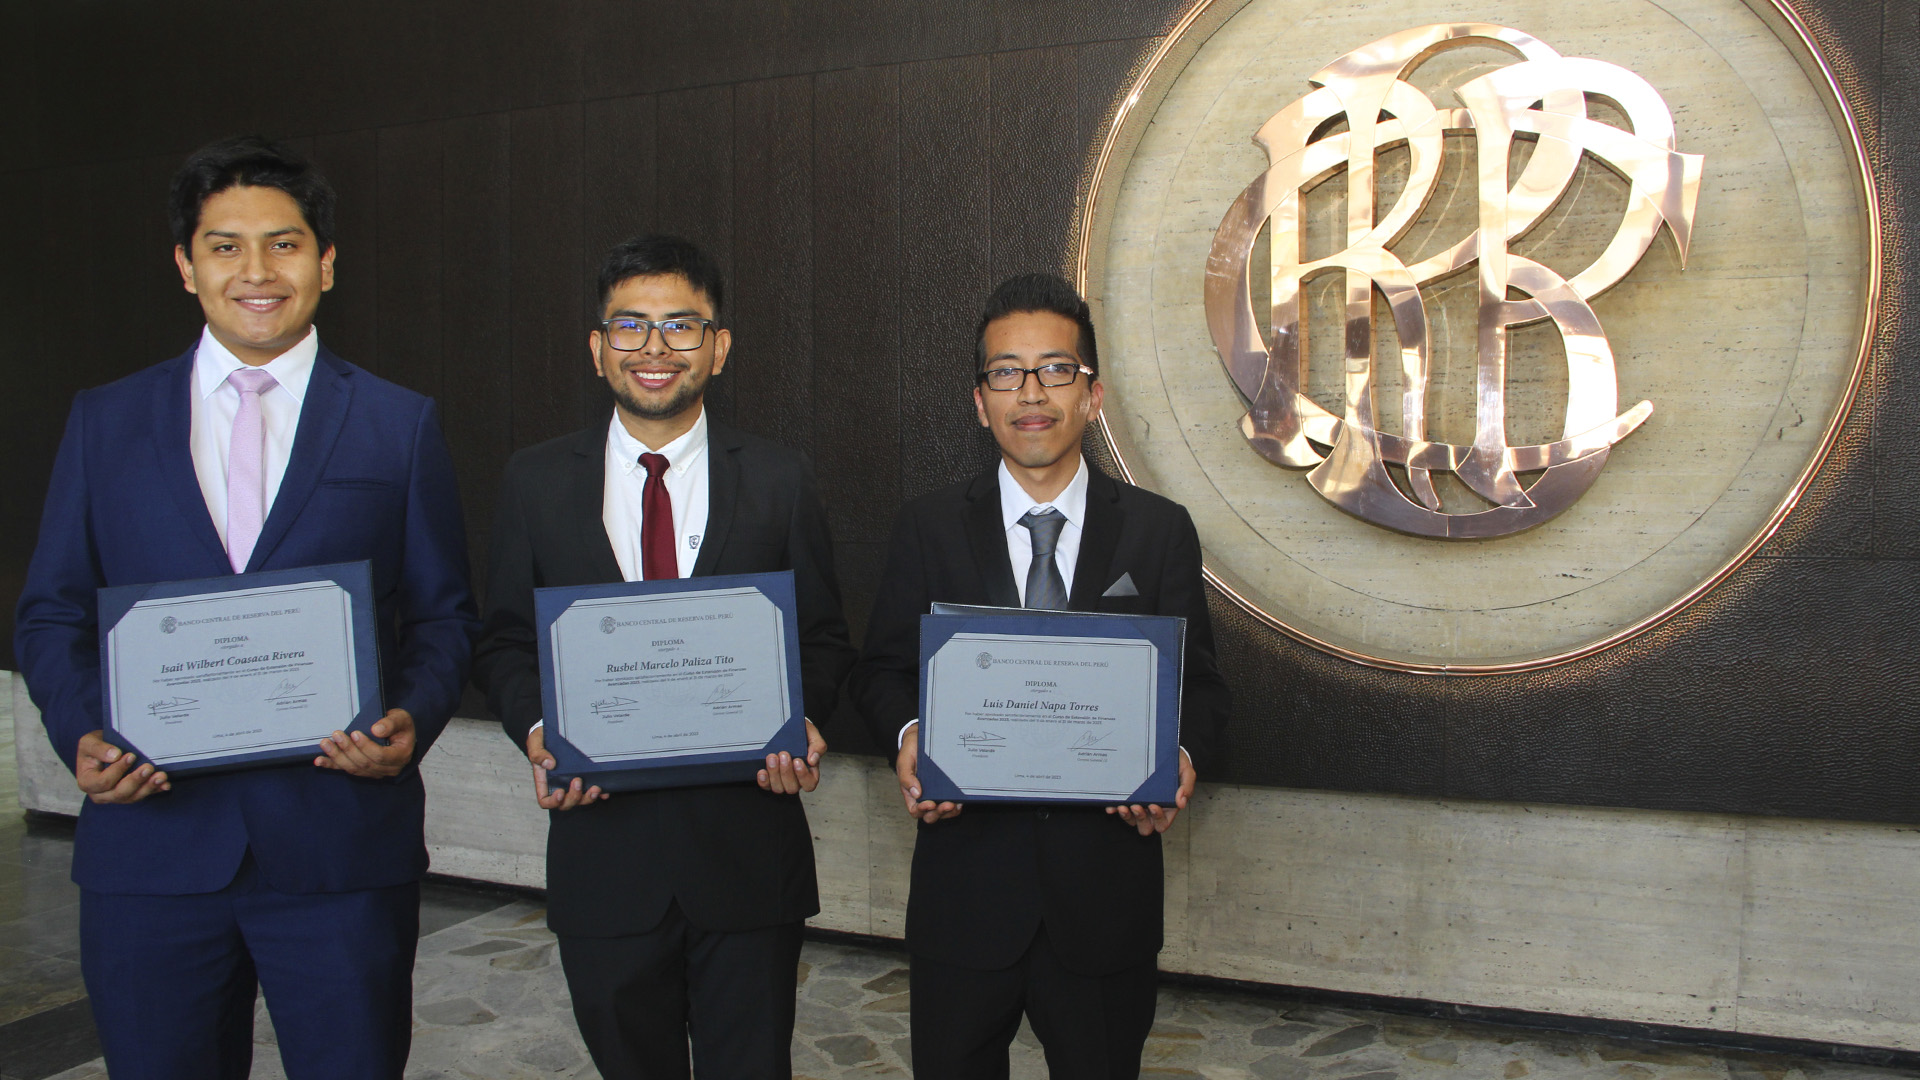 Los estudiantes Luis Napa, Isait Coasaca, Marcelo Paliza y el egresado Rafael Velarde consiguieron los tres primeros lugares en los cursos de extensión del BCRP